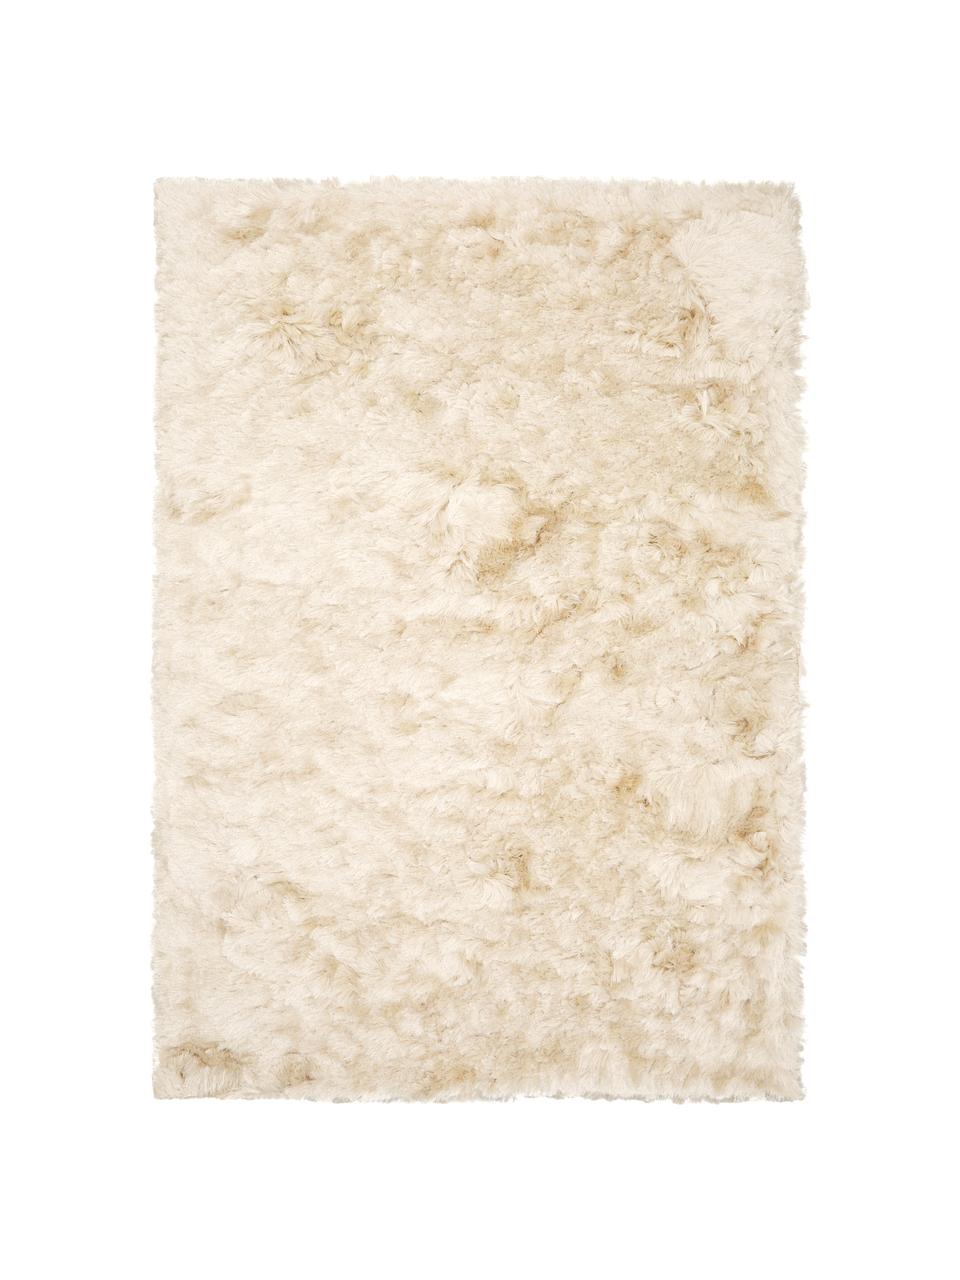 Glänzender Hochflor-Teppich Jimmy in Elfenbein, Flor: 100% Polyester, Elfenbein, B 160 x L 230 cm (Größe M)